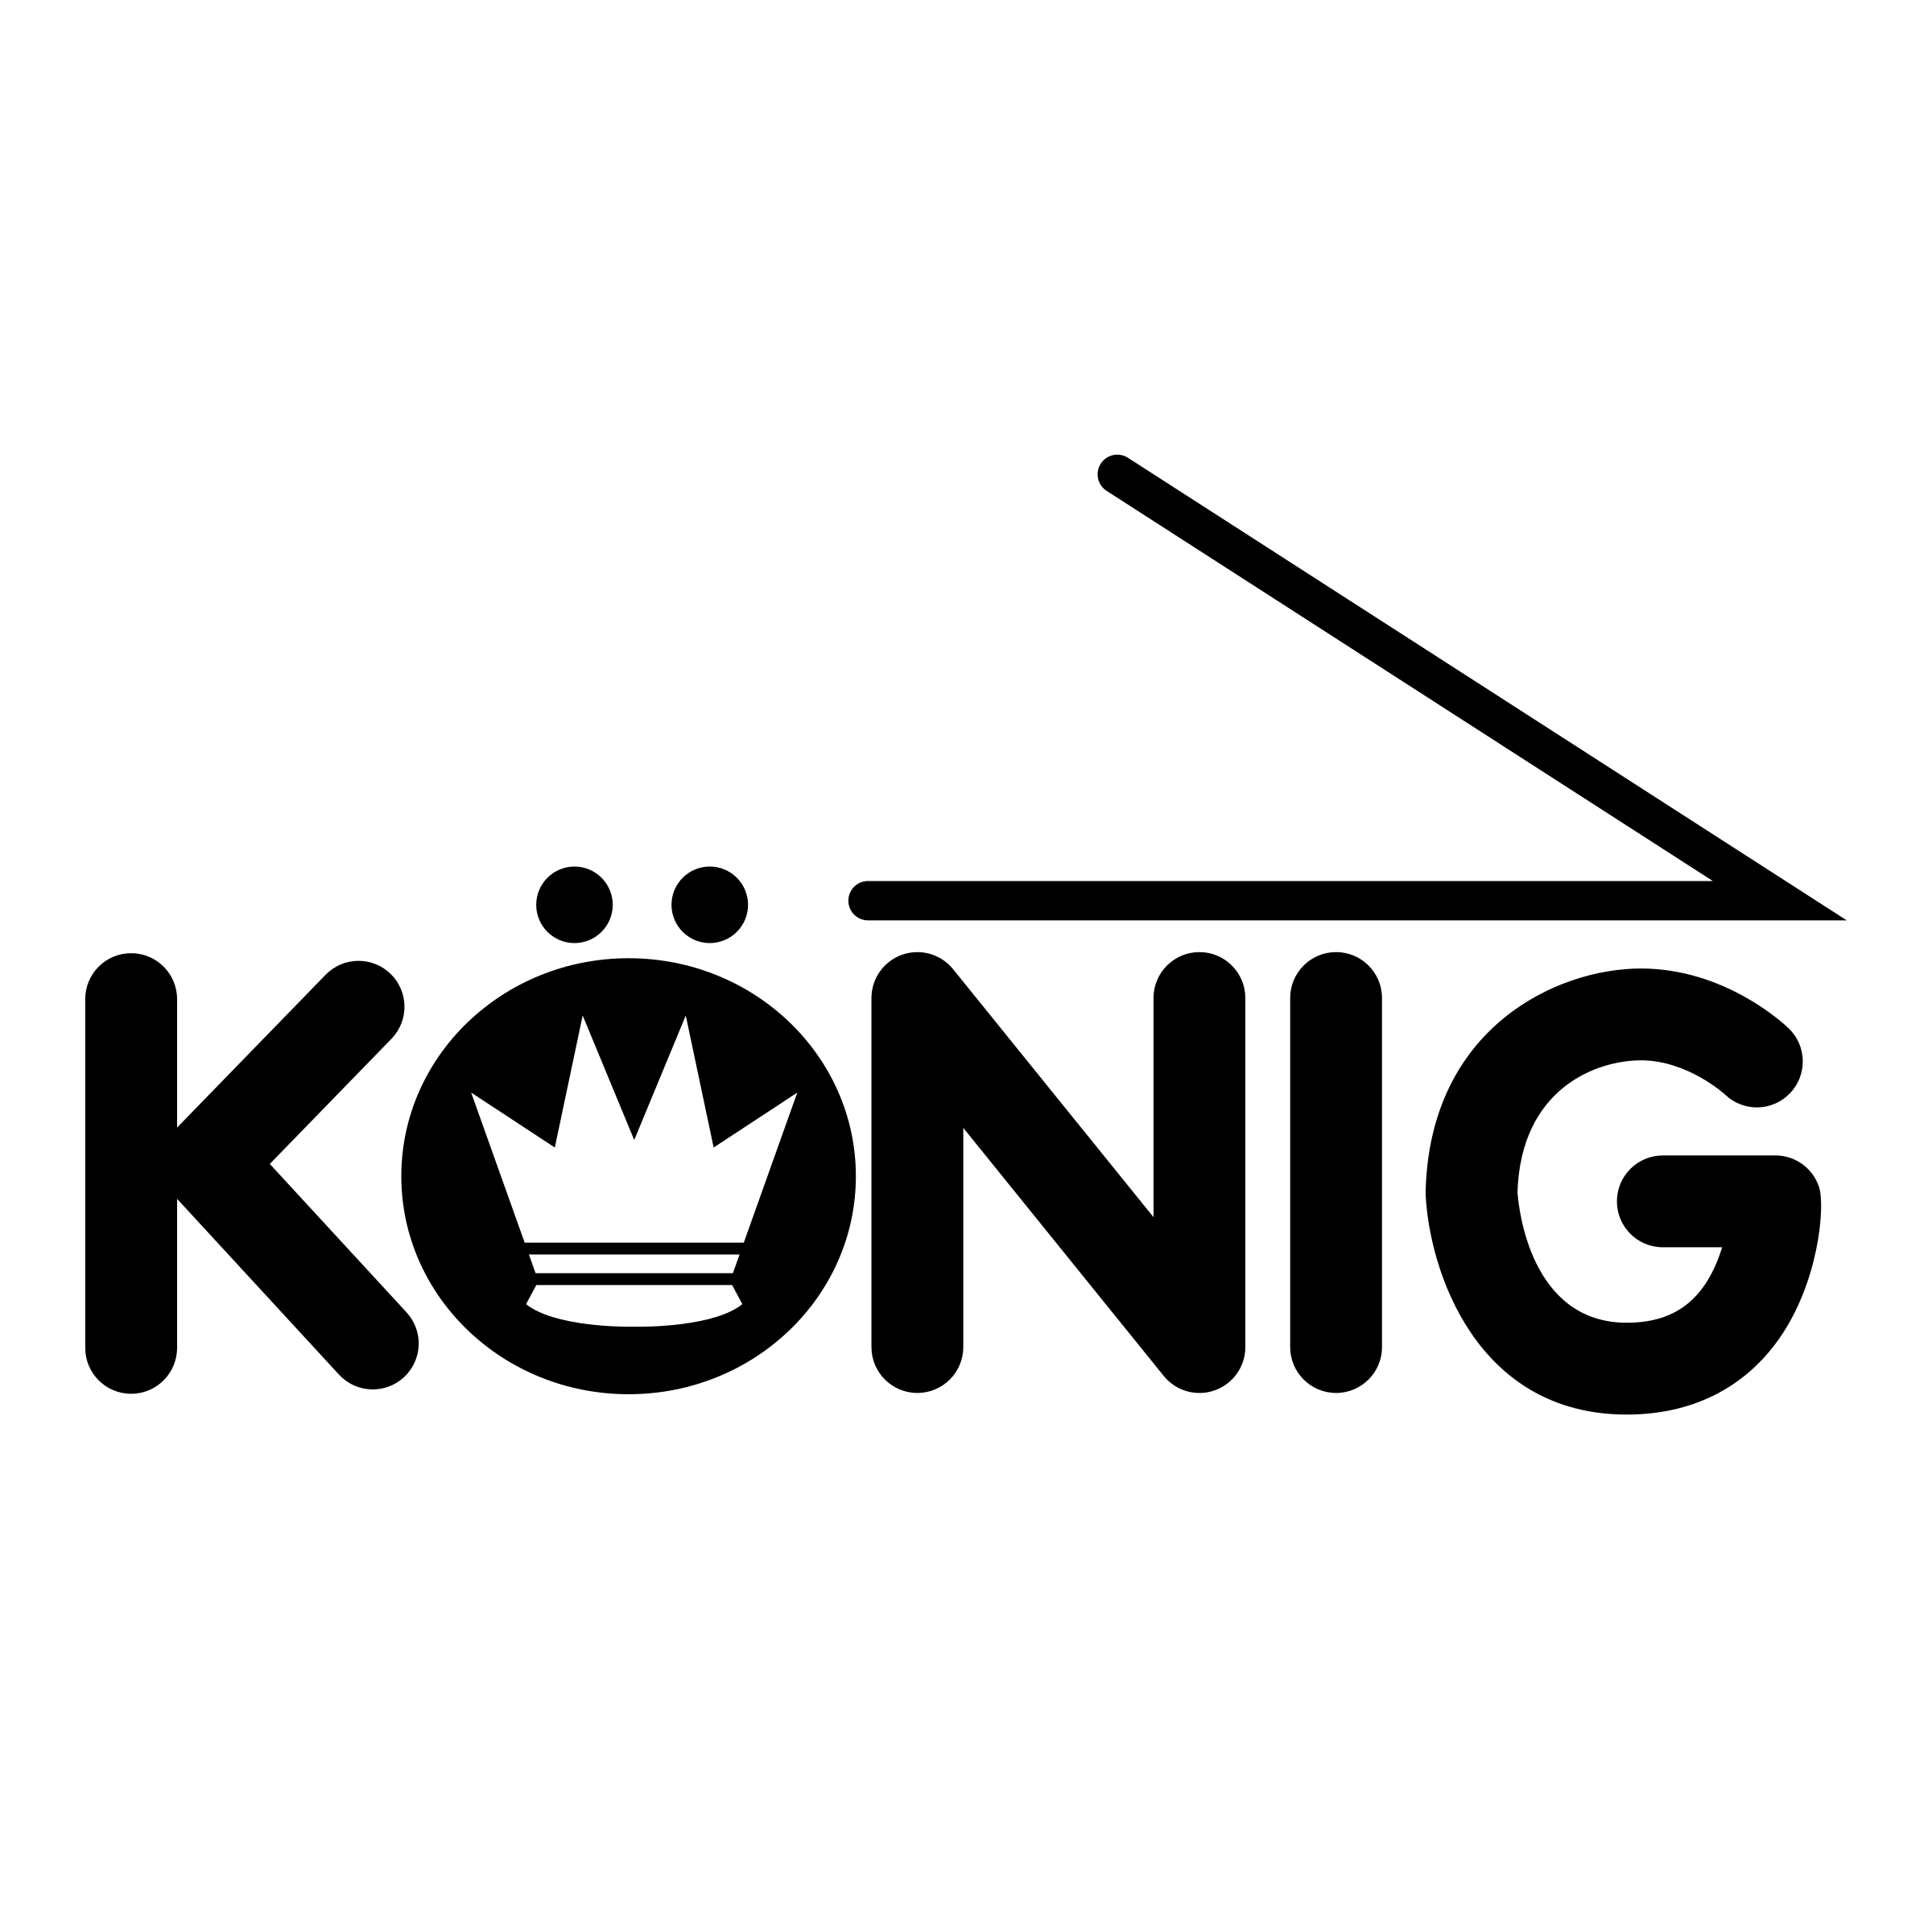 Konig Logo - Konig Logo PNG Transparent & SVG Vector - Freebie Supply